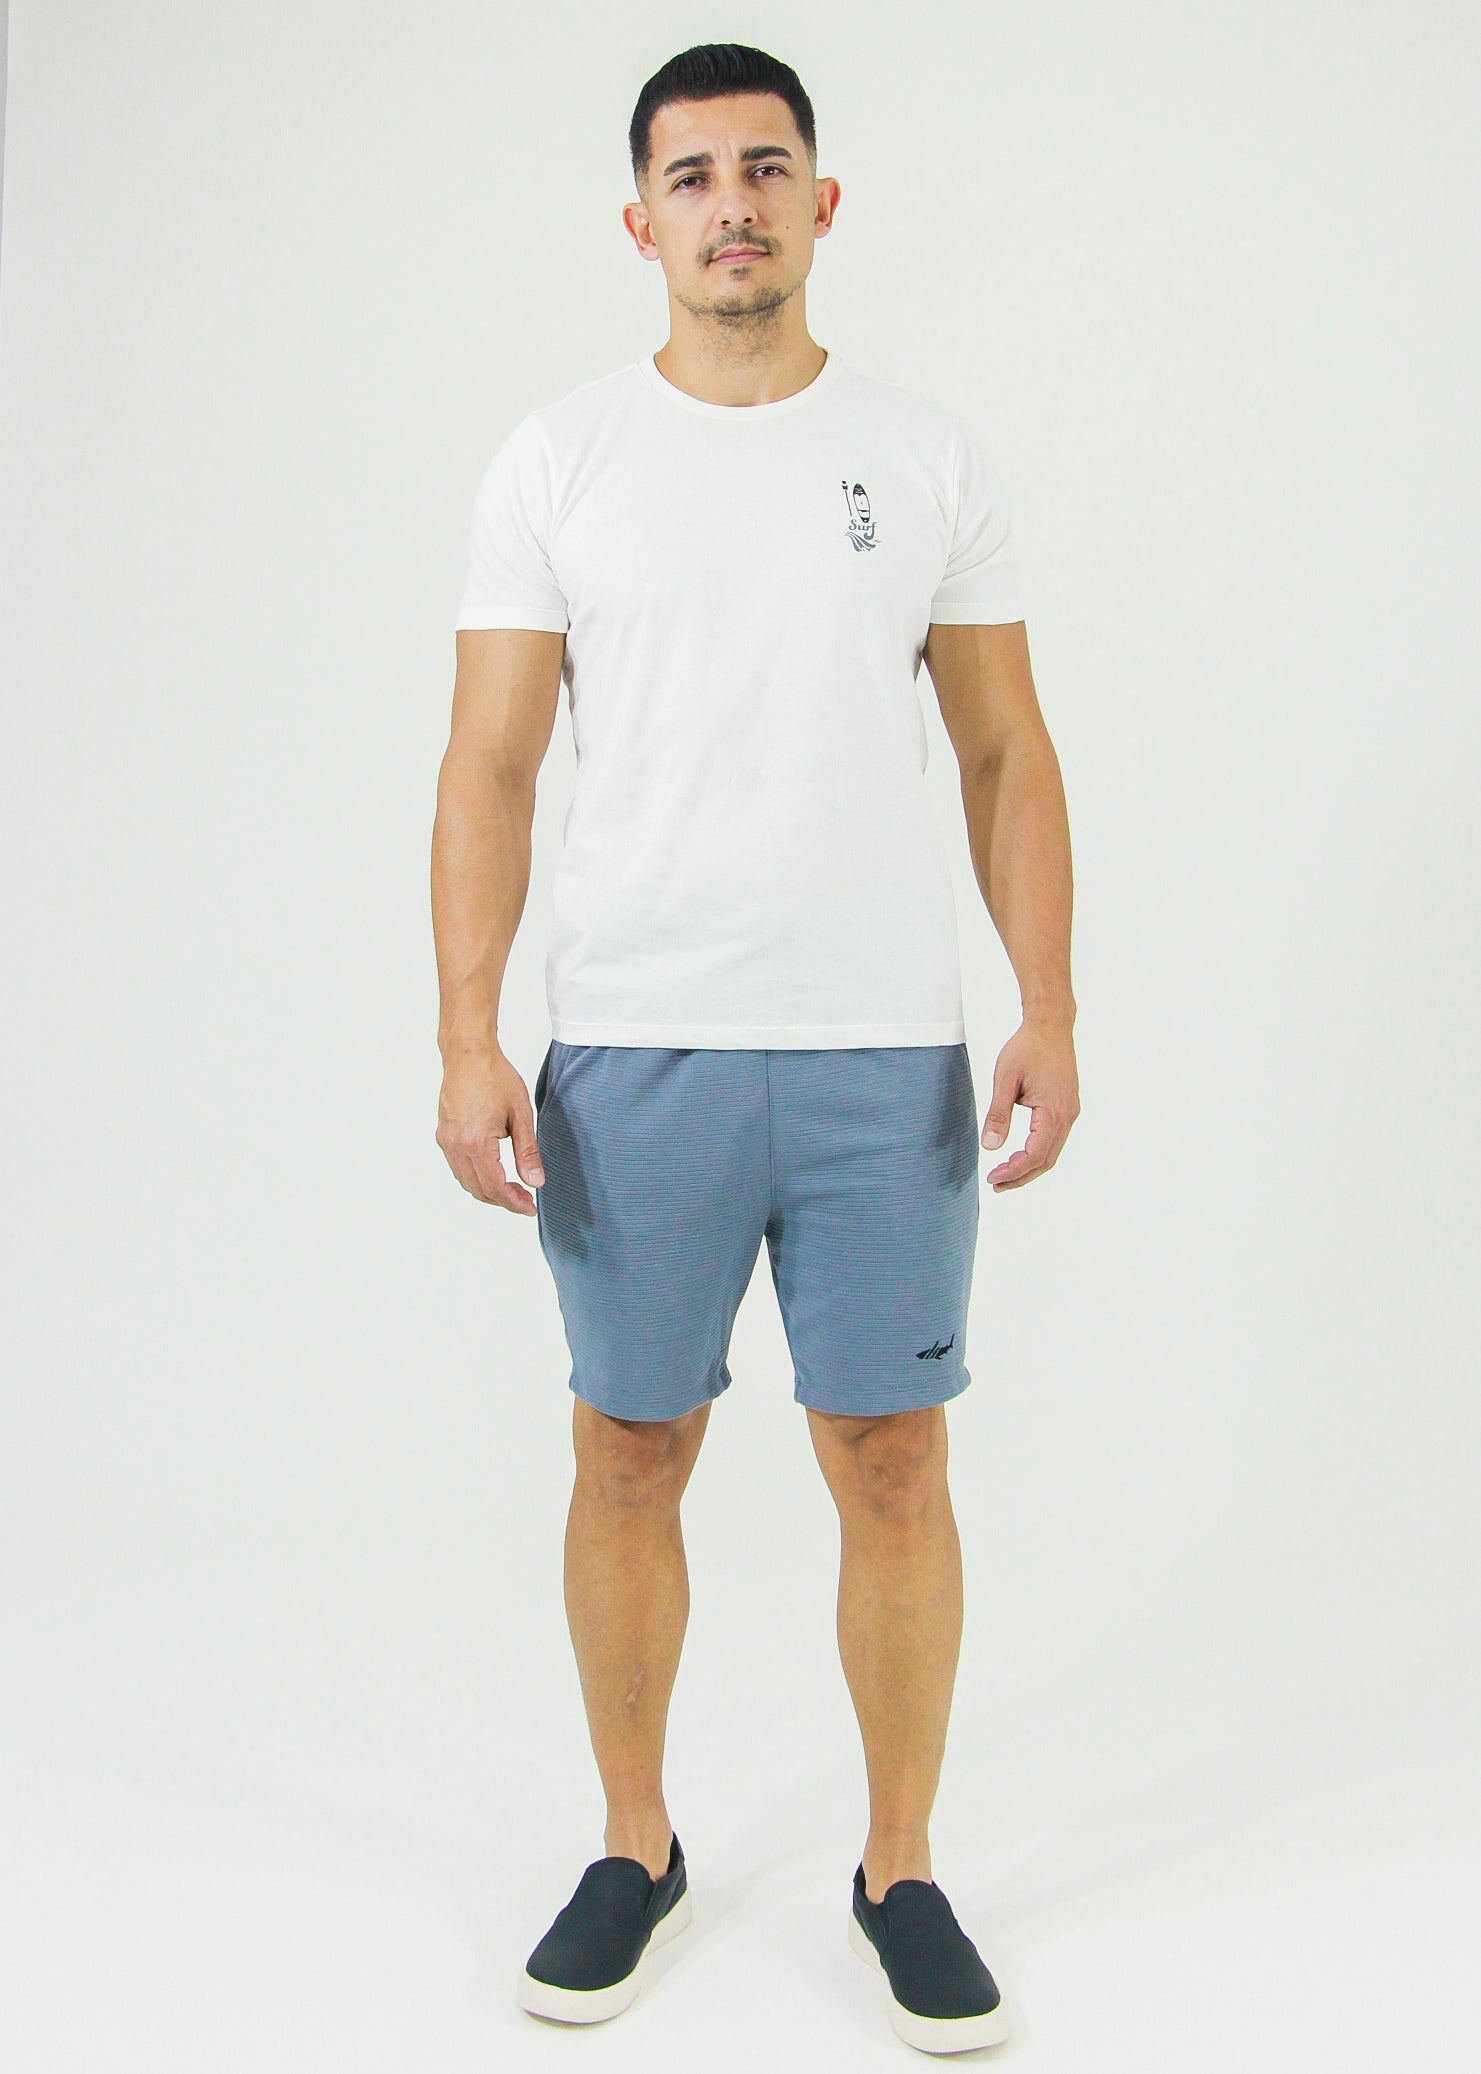 Camiseta Estampada Surf - Off White